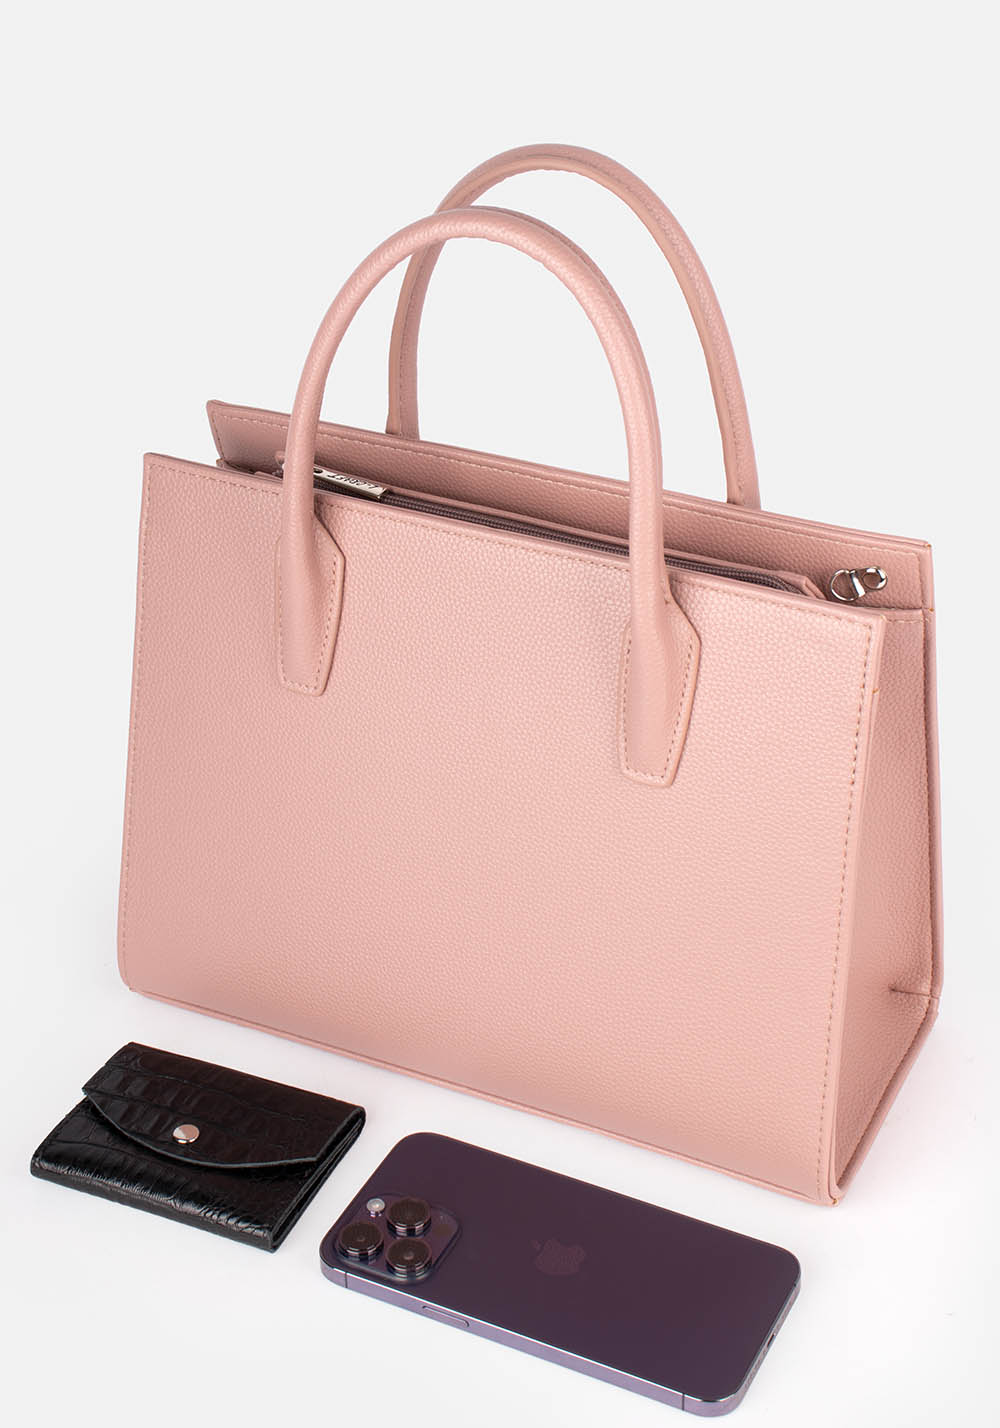 Женская сумка L-craft модель №1507 | кожзам | зернистая | цвет розовый | Р917-54 | арт. 33924 - купить от производителя оптом и в розницу